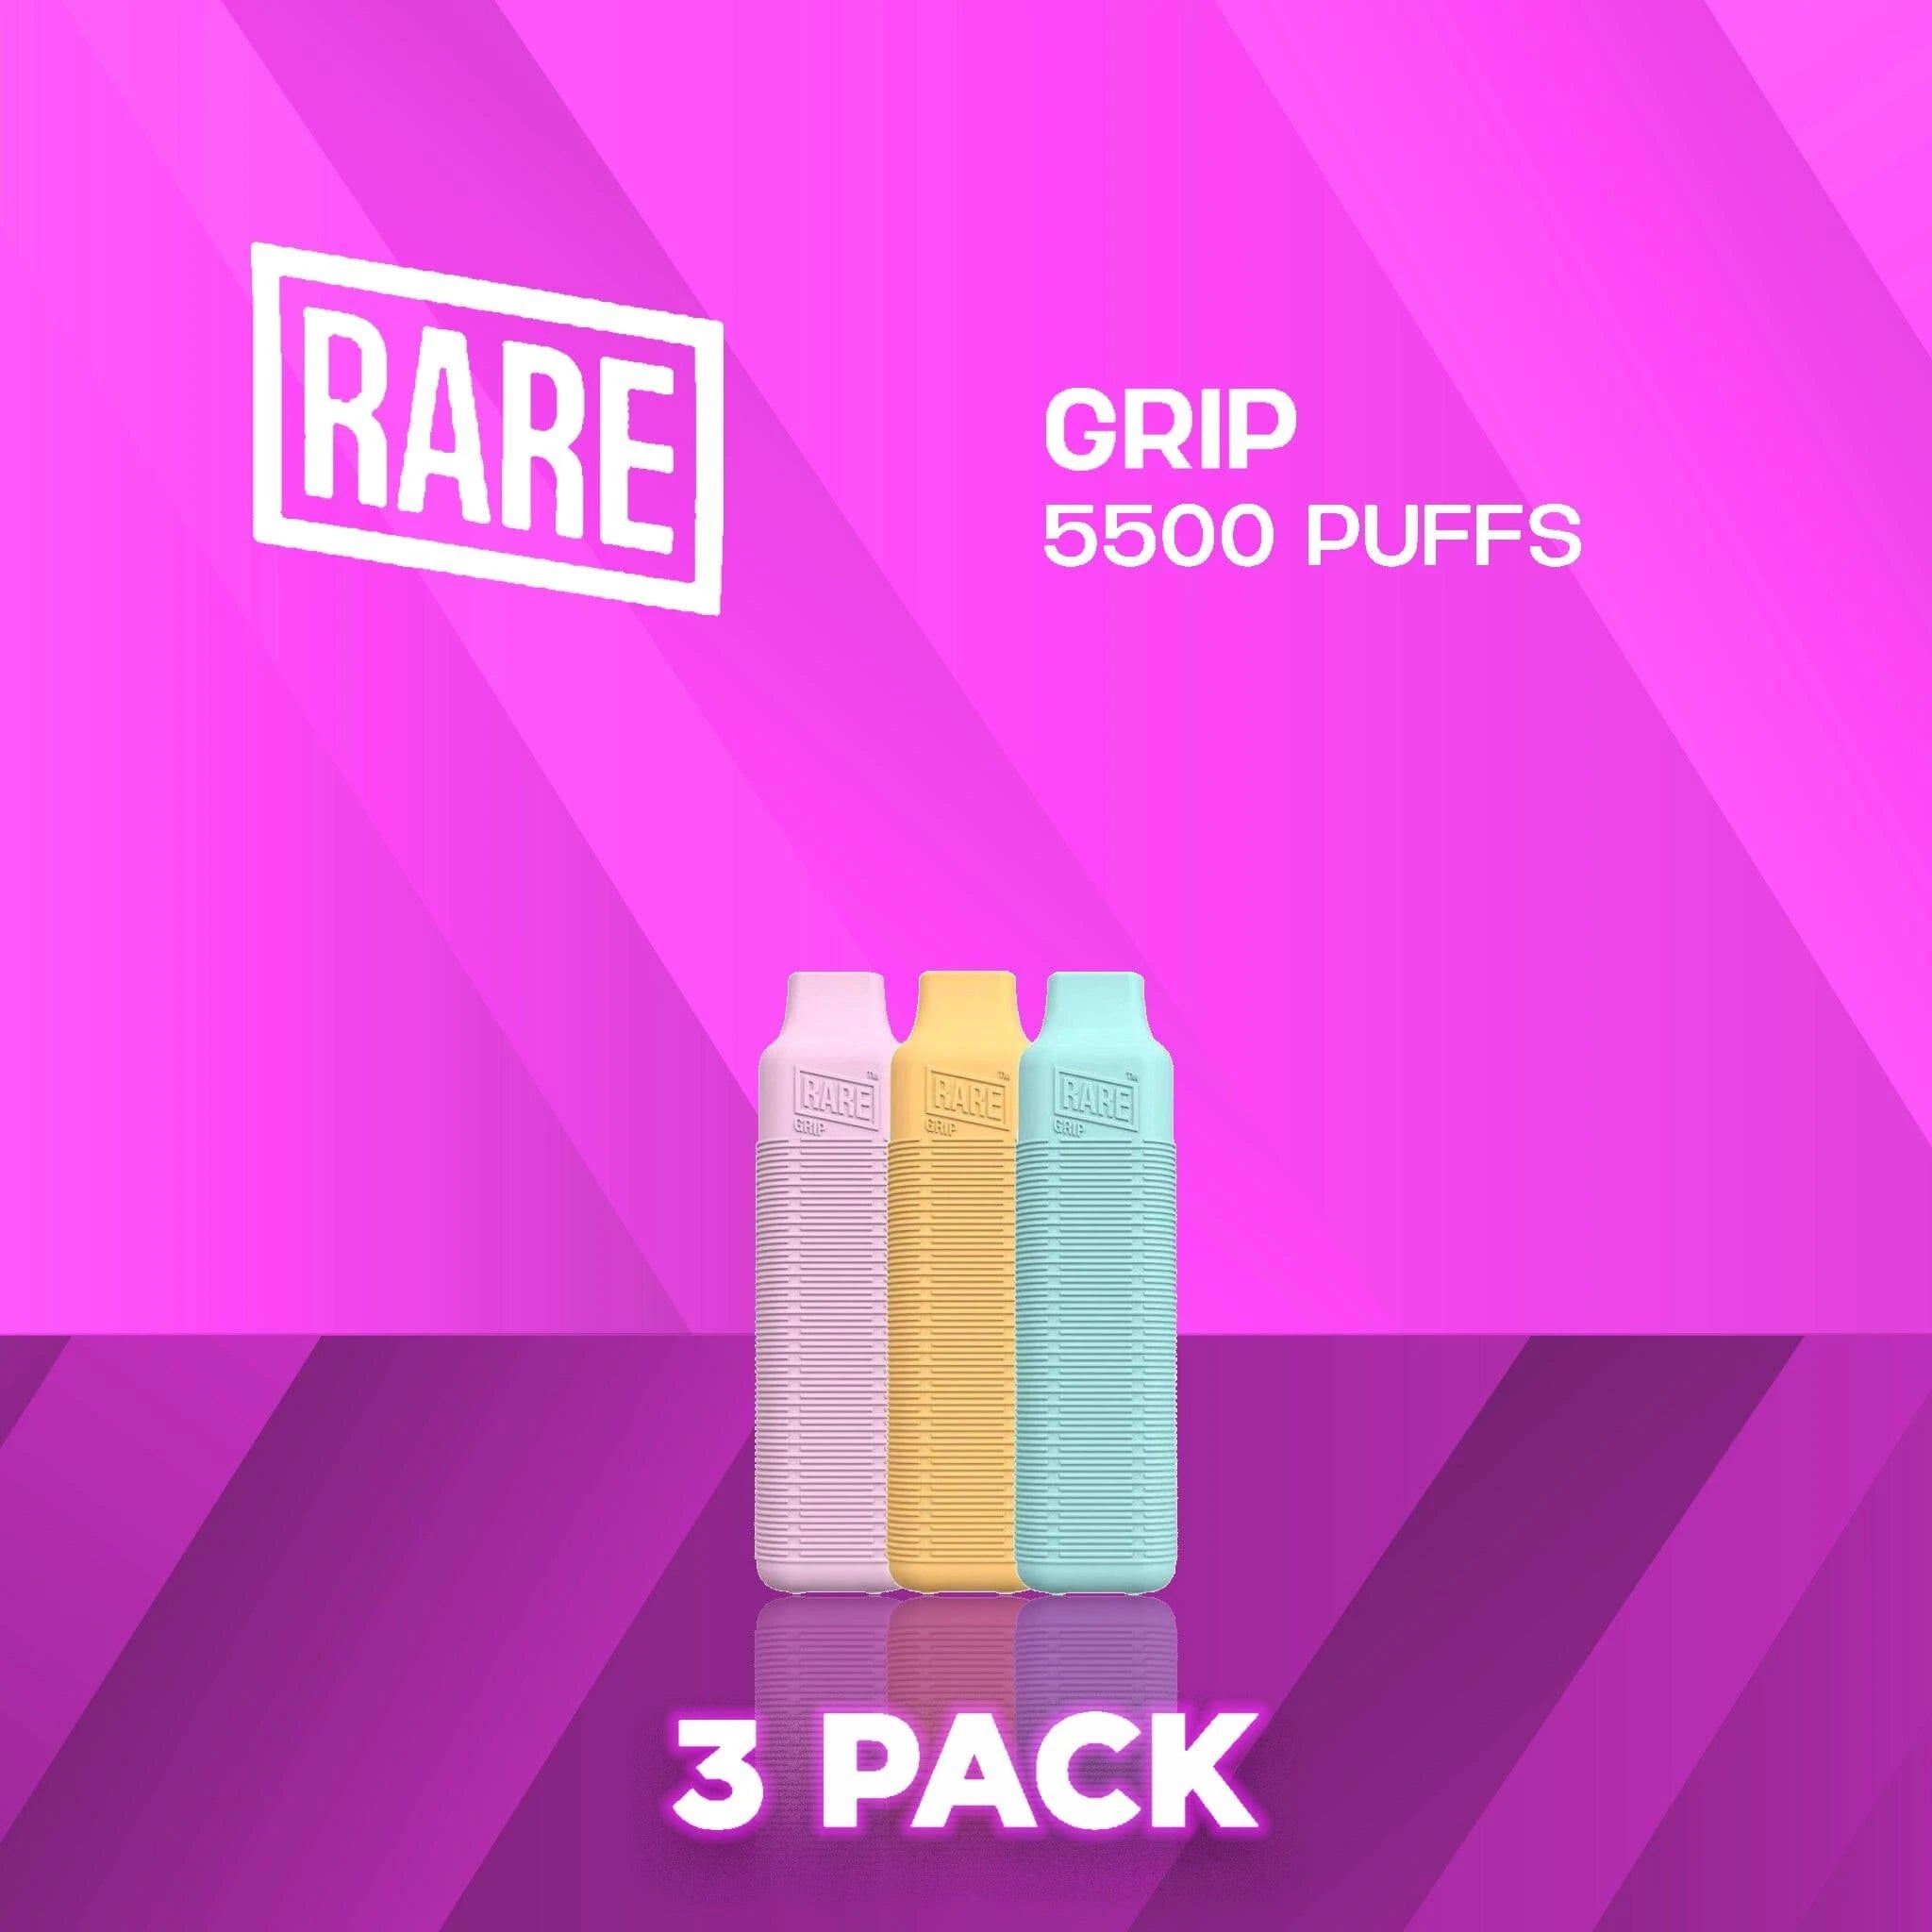 Rare Grip 5500 Puffs Disposable Vape - 3 Pack